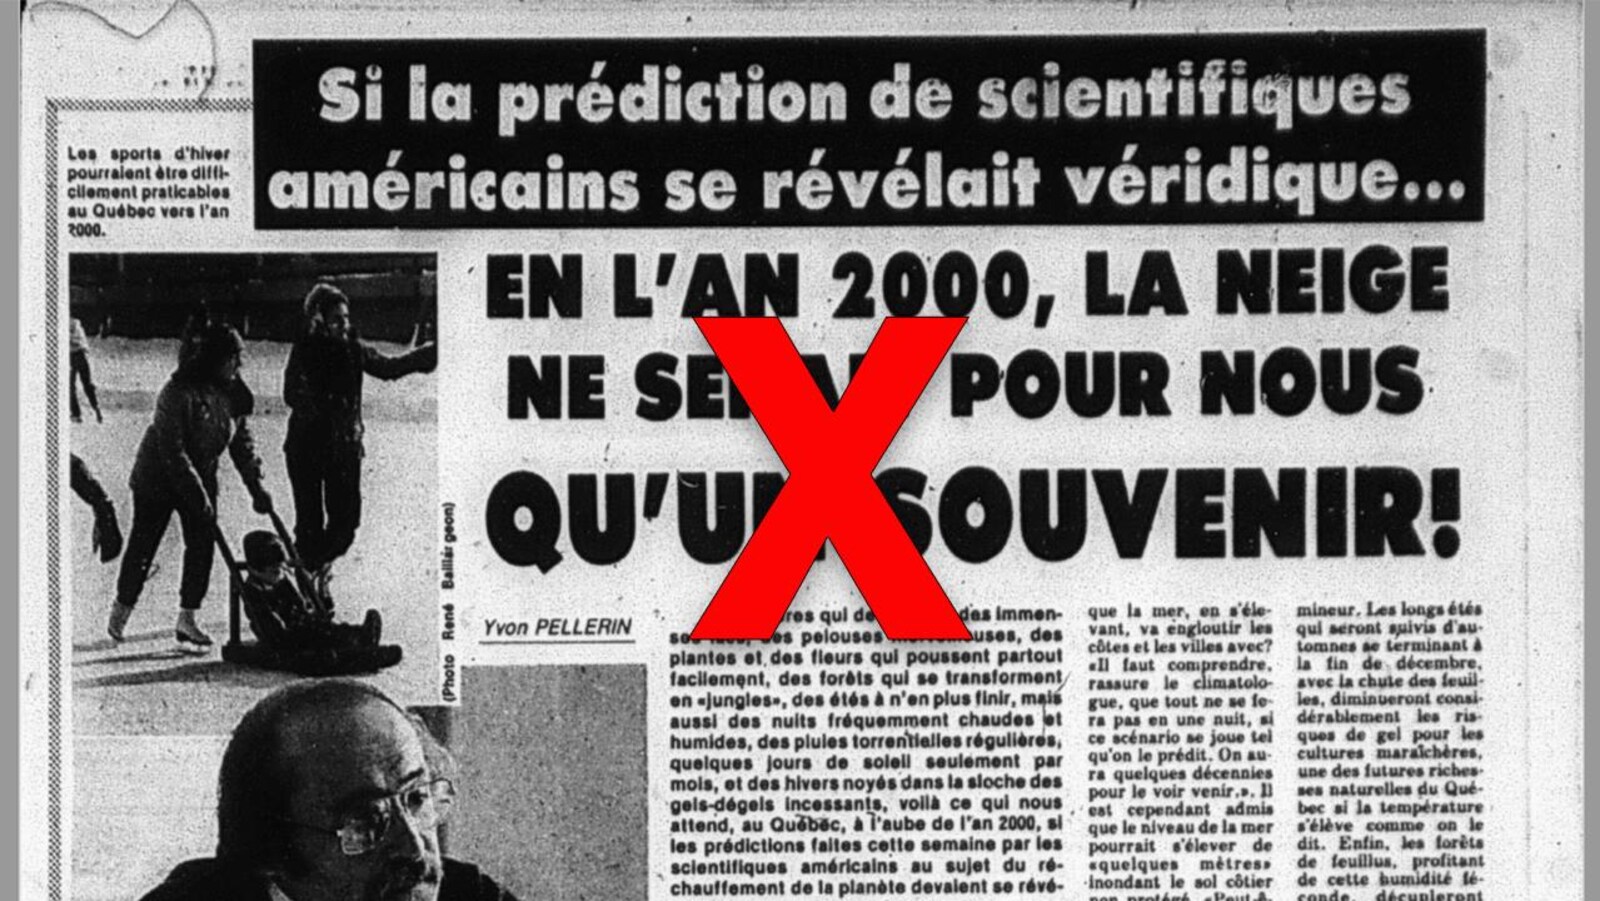 Nous voyons un article de journal intitulé «Si la prédiction des scientifiques américains se révélait véridique... en l'an 2000, la neige ne serait pour nous qu'un souvenir!»